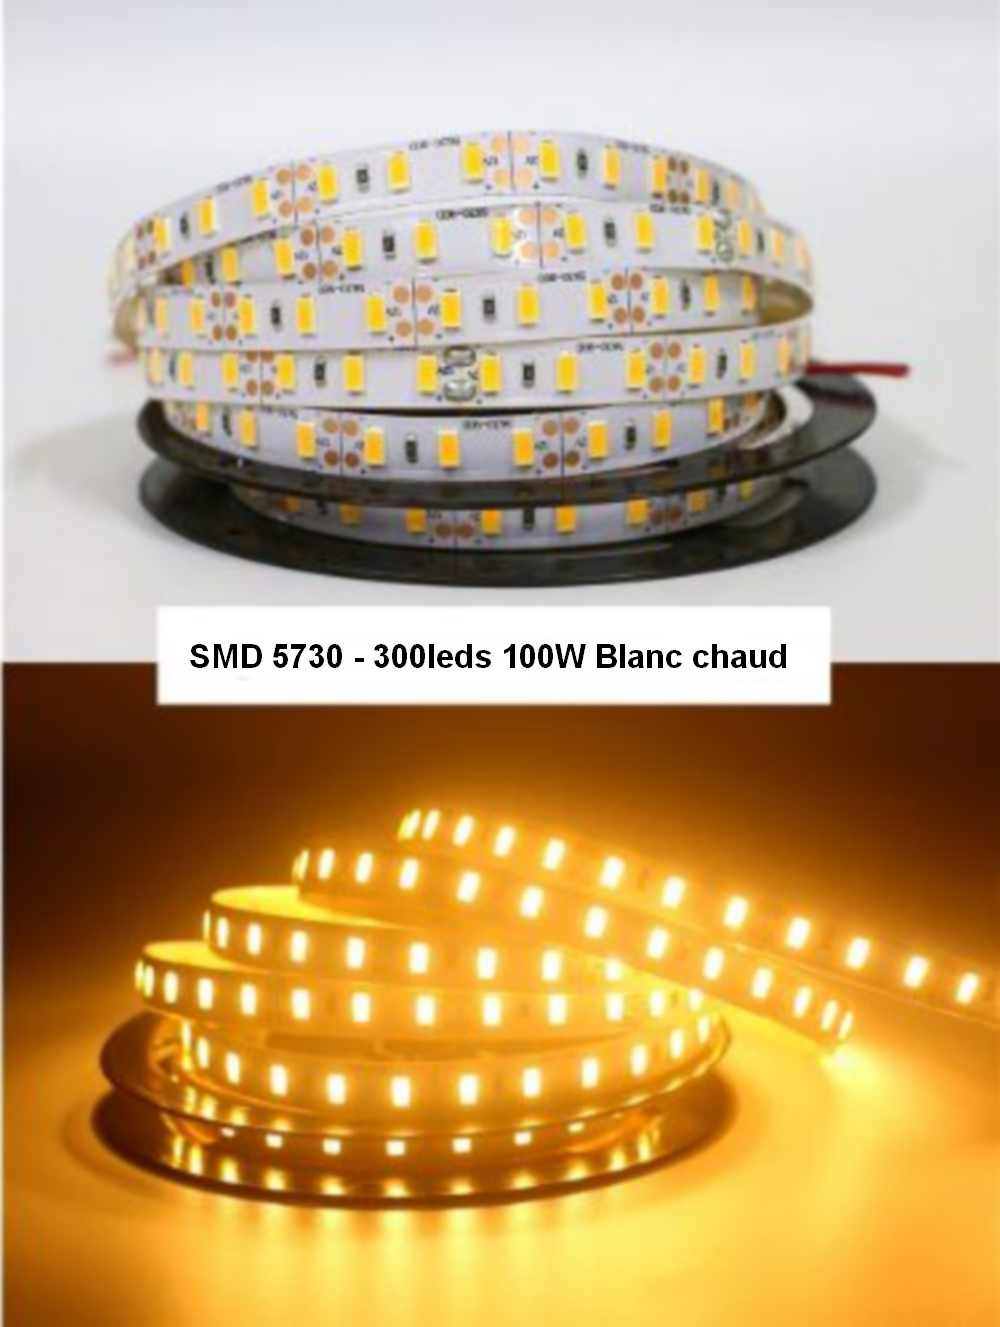 Bande lumineuse de 5m LED de boîtier, 72 LED / m, 360 LED SMD 5730 IP65  Lampe LED étanche avec prise de courant, AC 220V (lumière blanche)